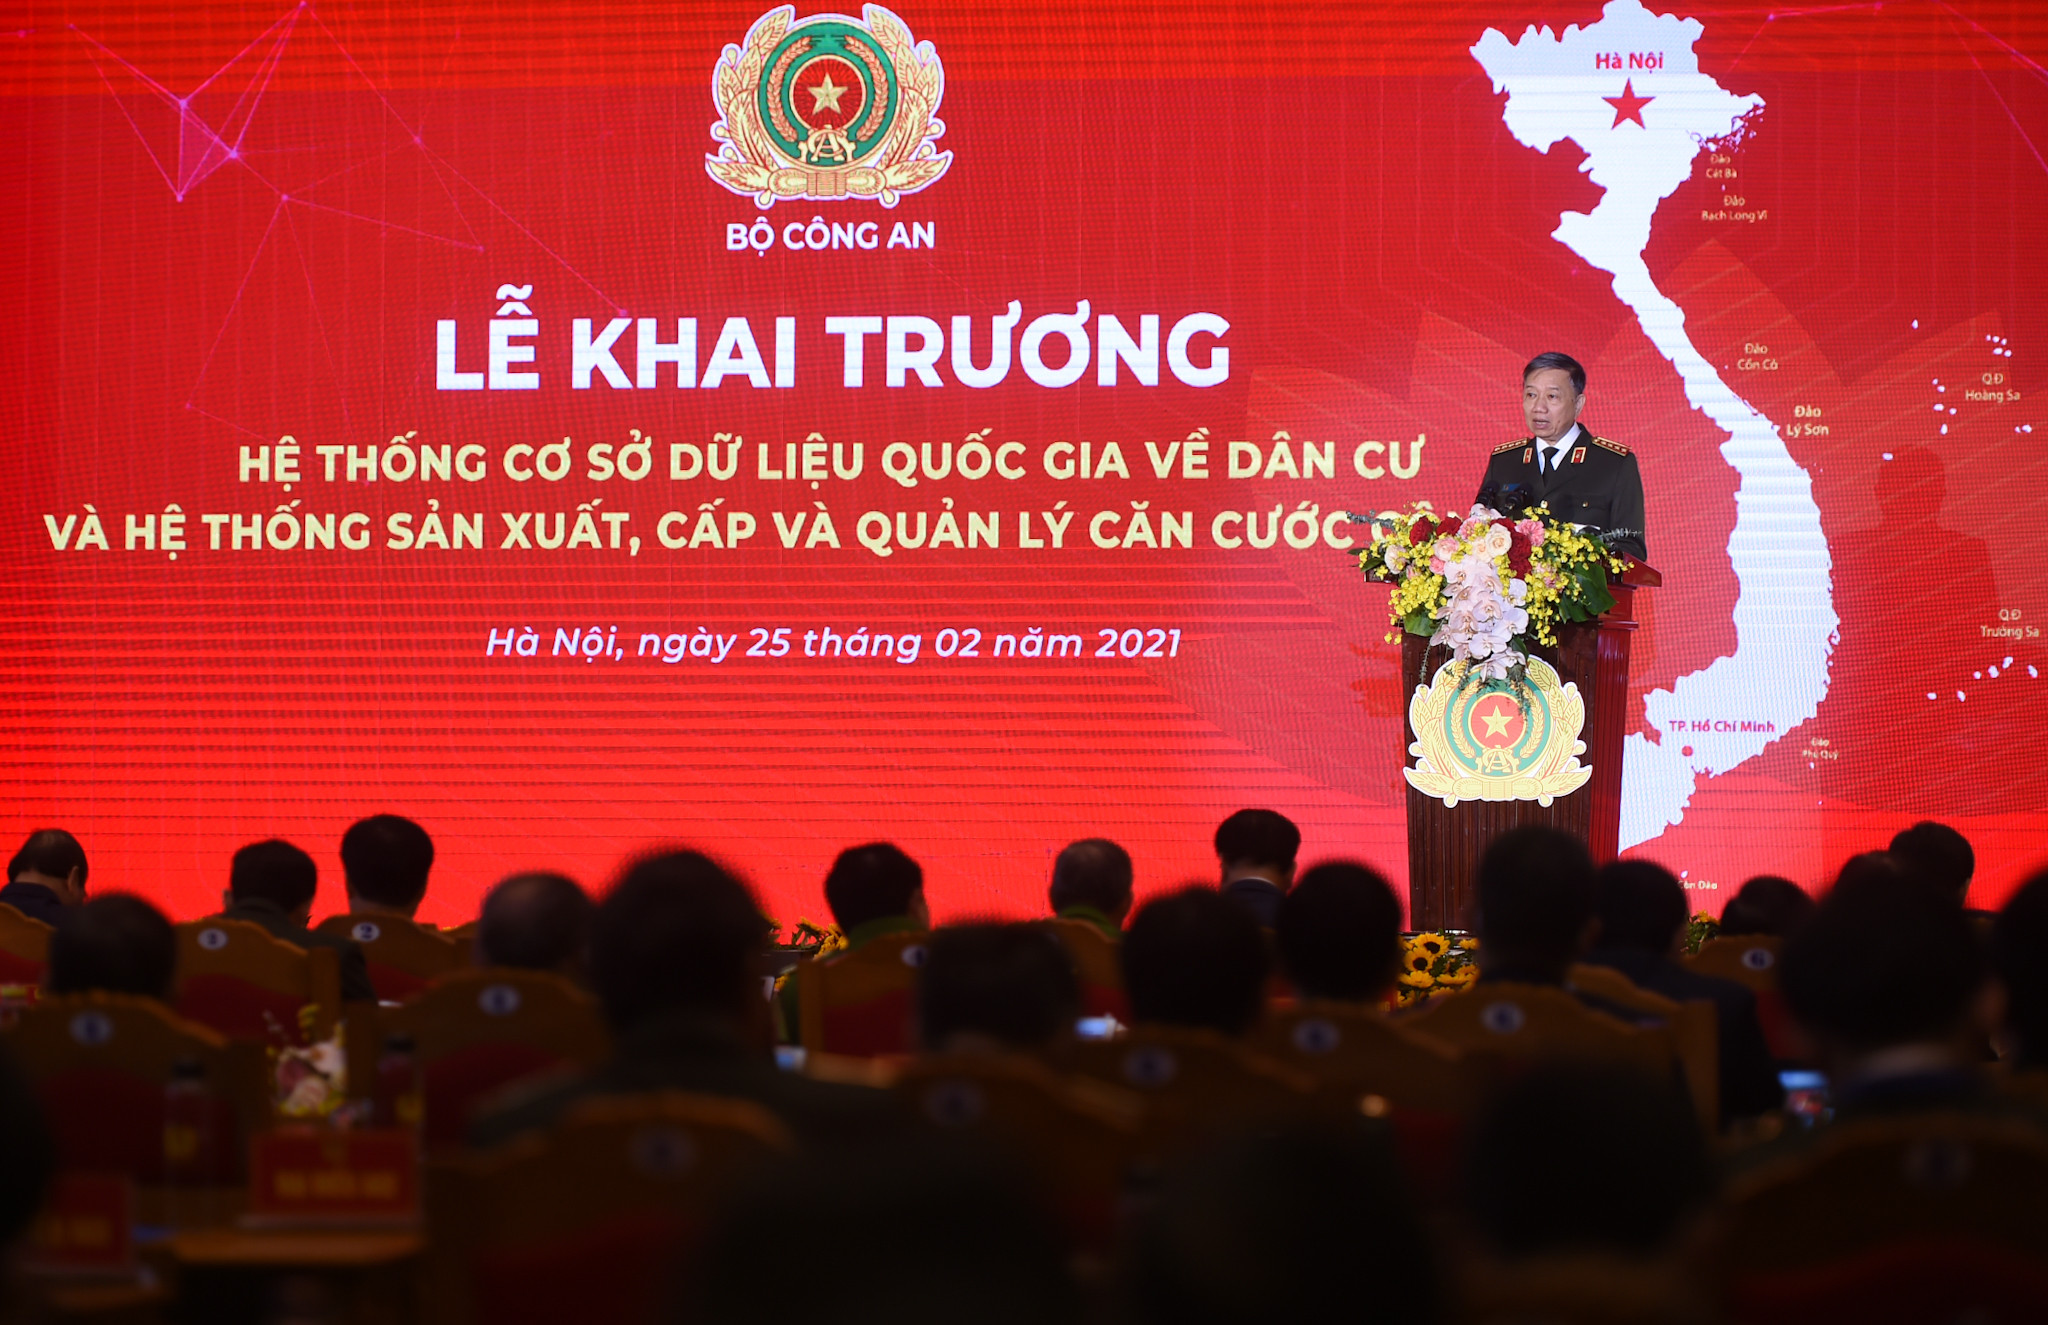 Đại tướng Tô Lâm, Bộ trưởng Bộ Công an phát biểu tại buổi lễ. Ảnh: VGP/Quang Hiếu